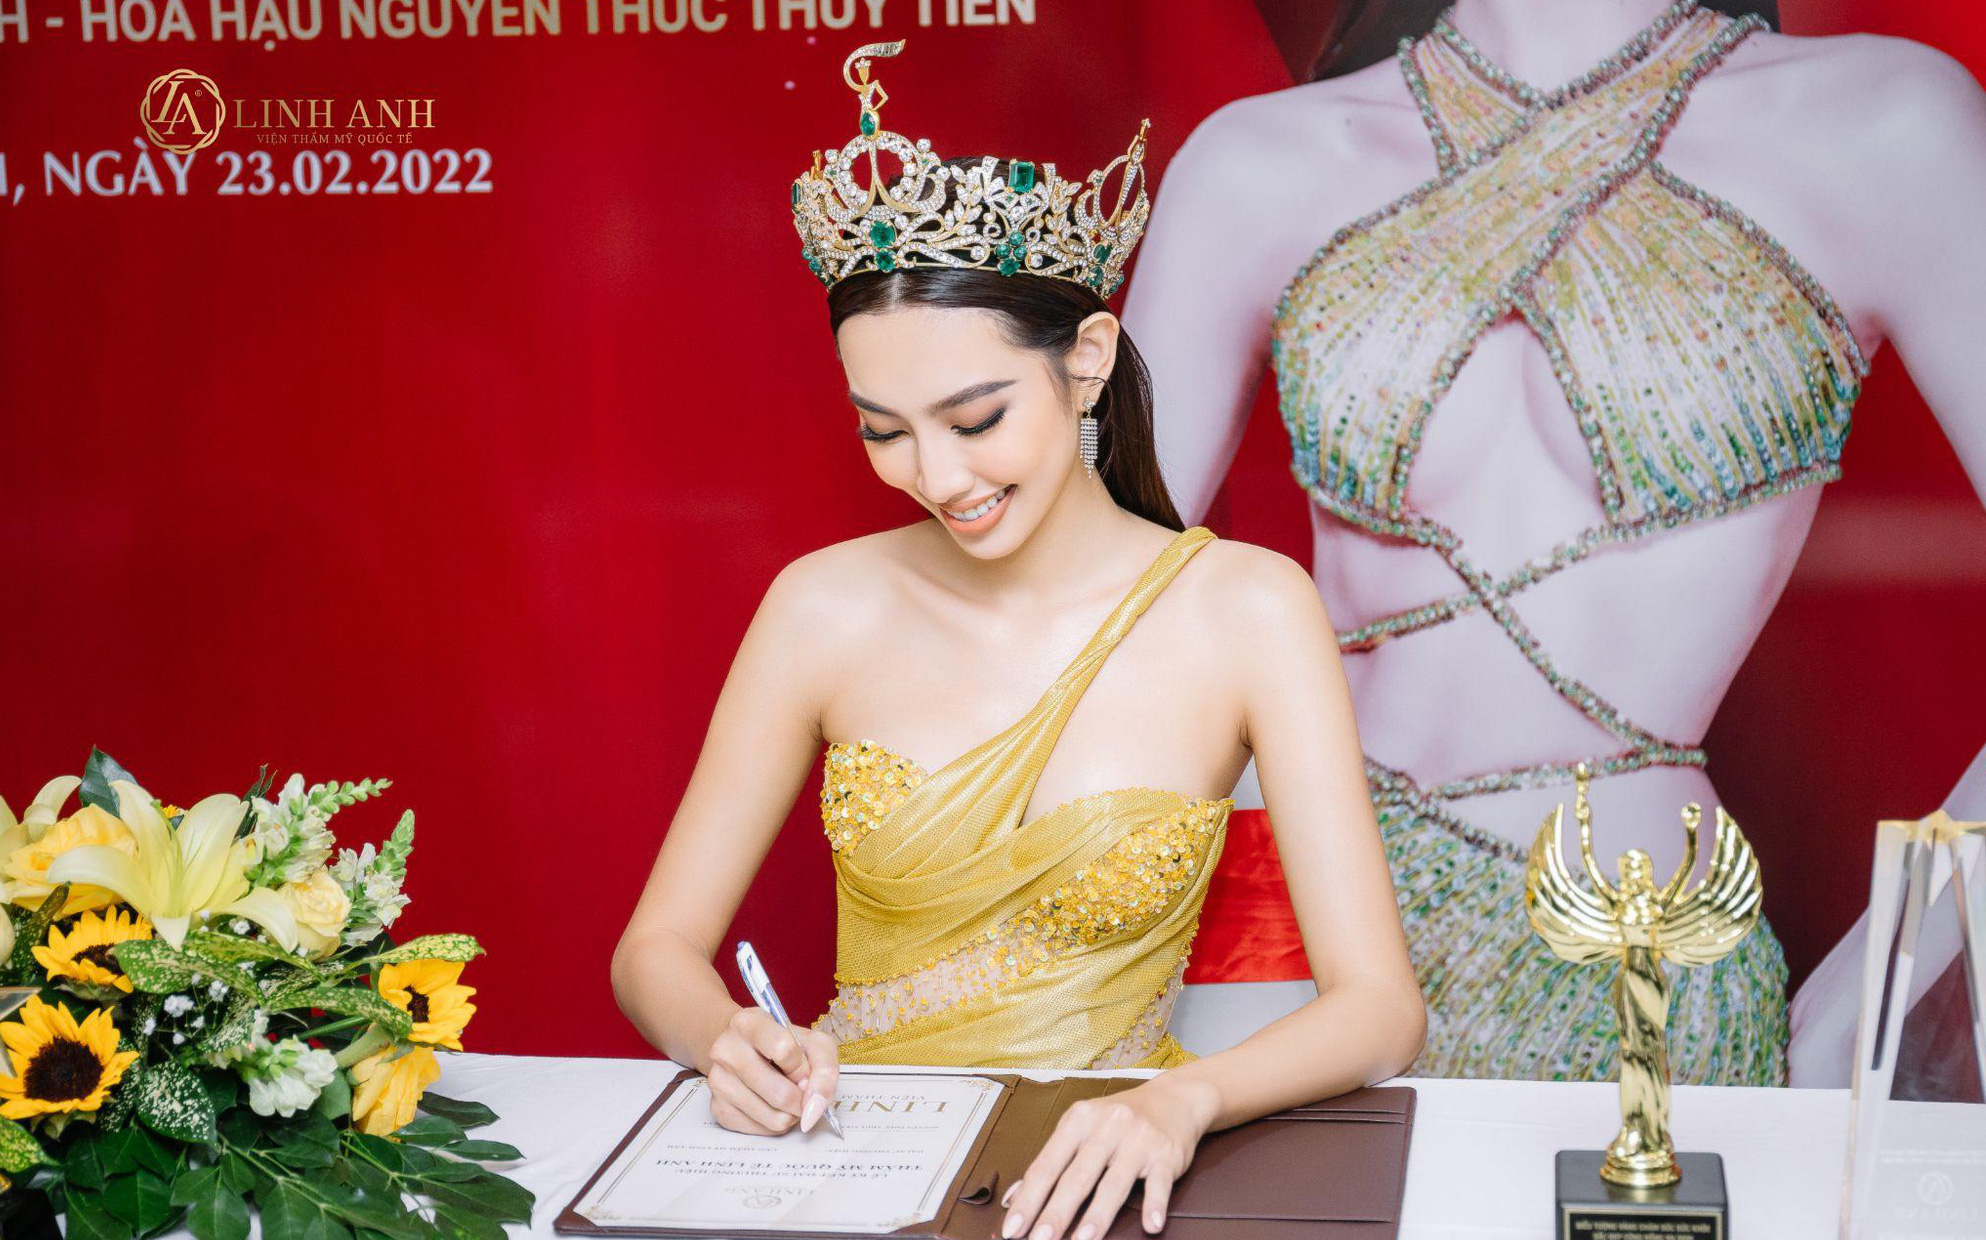 Bất ngờ trước lý do khiến Hoa hậu Thùy Tiên chọn Thẩm Mỹ Quốc Tế Linh Anh làm đại sứ thương hiệu